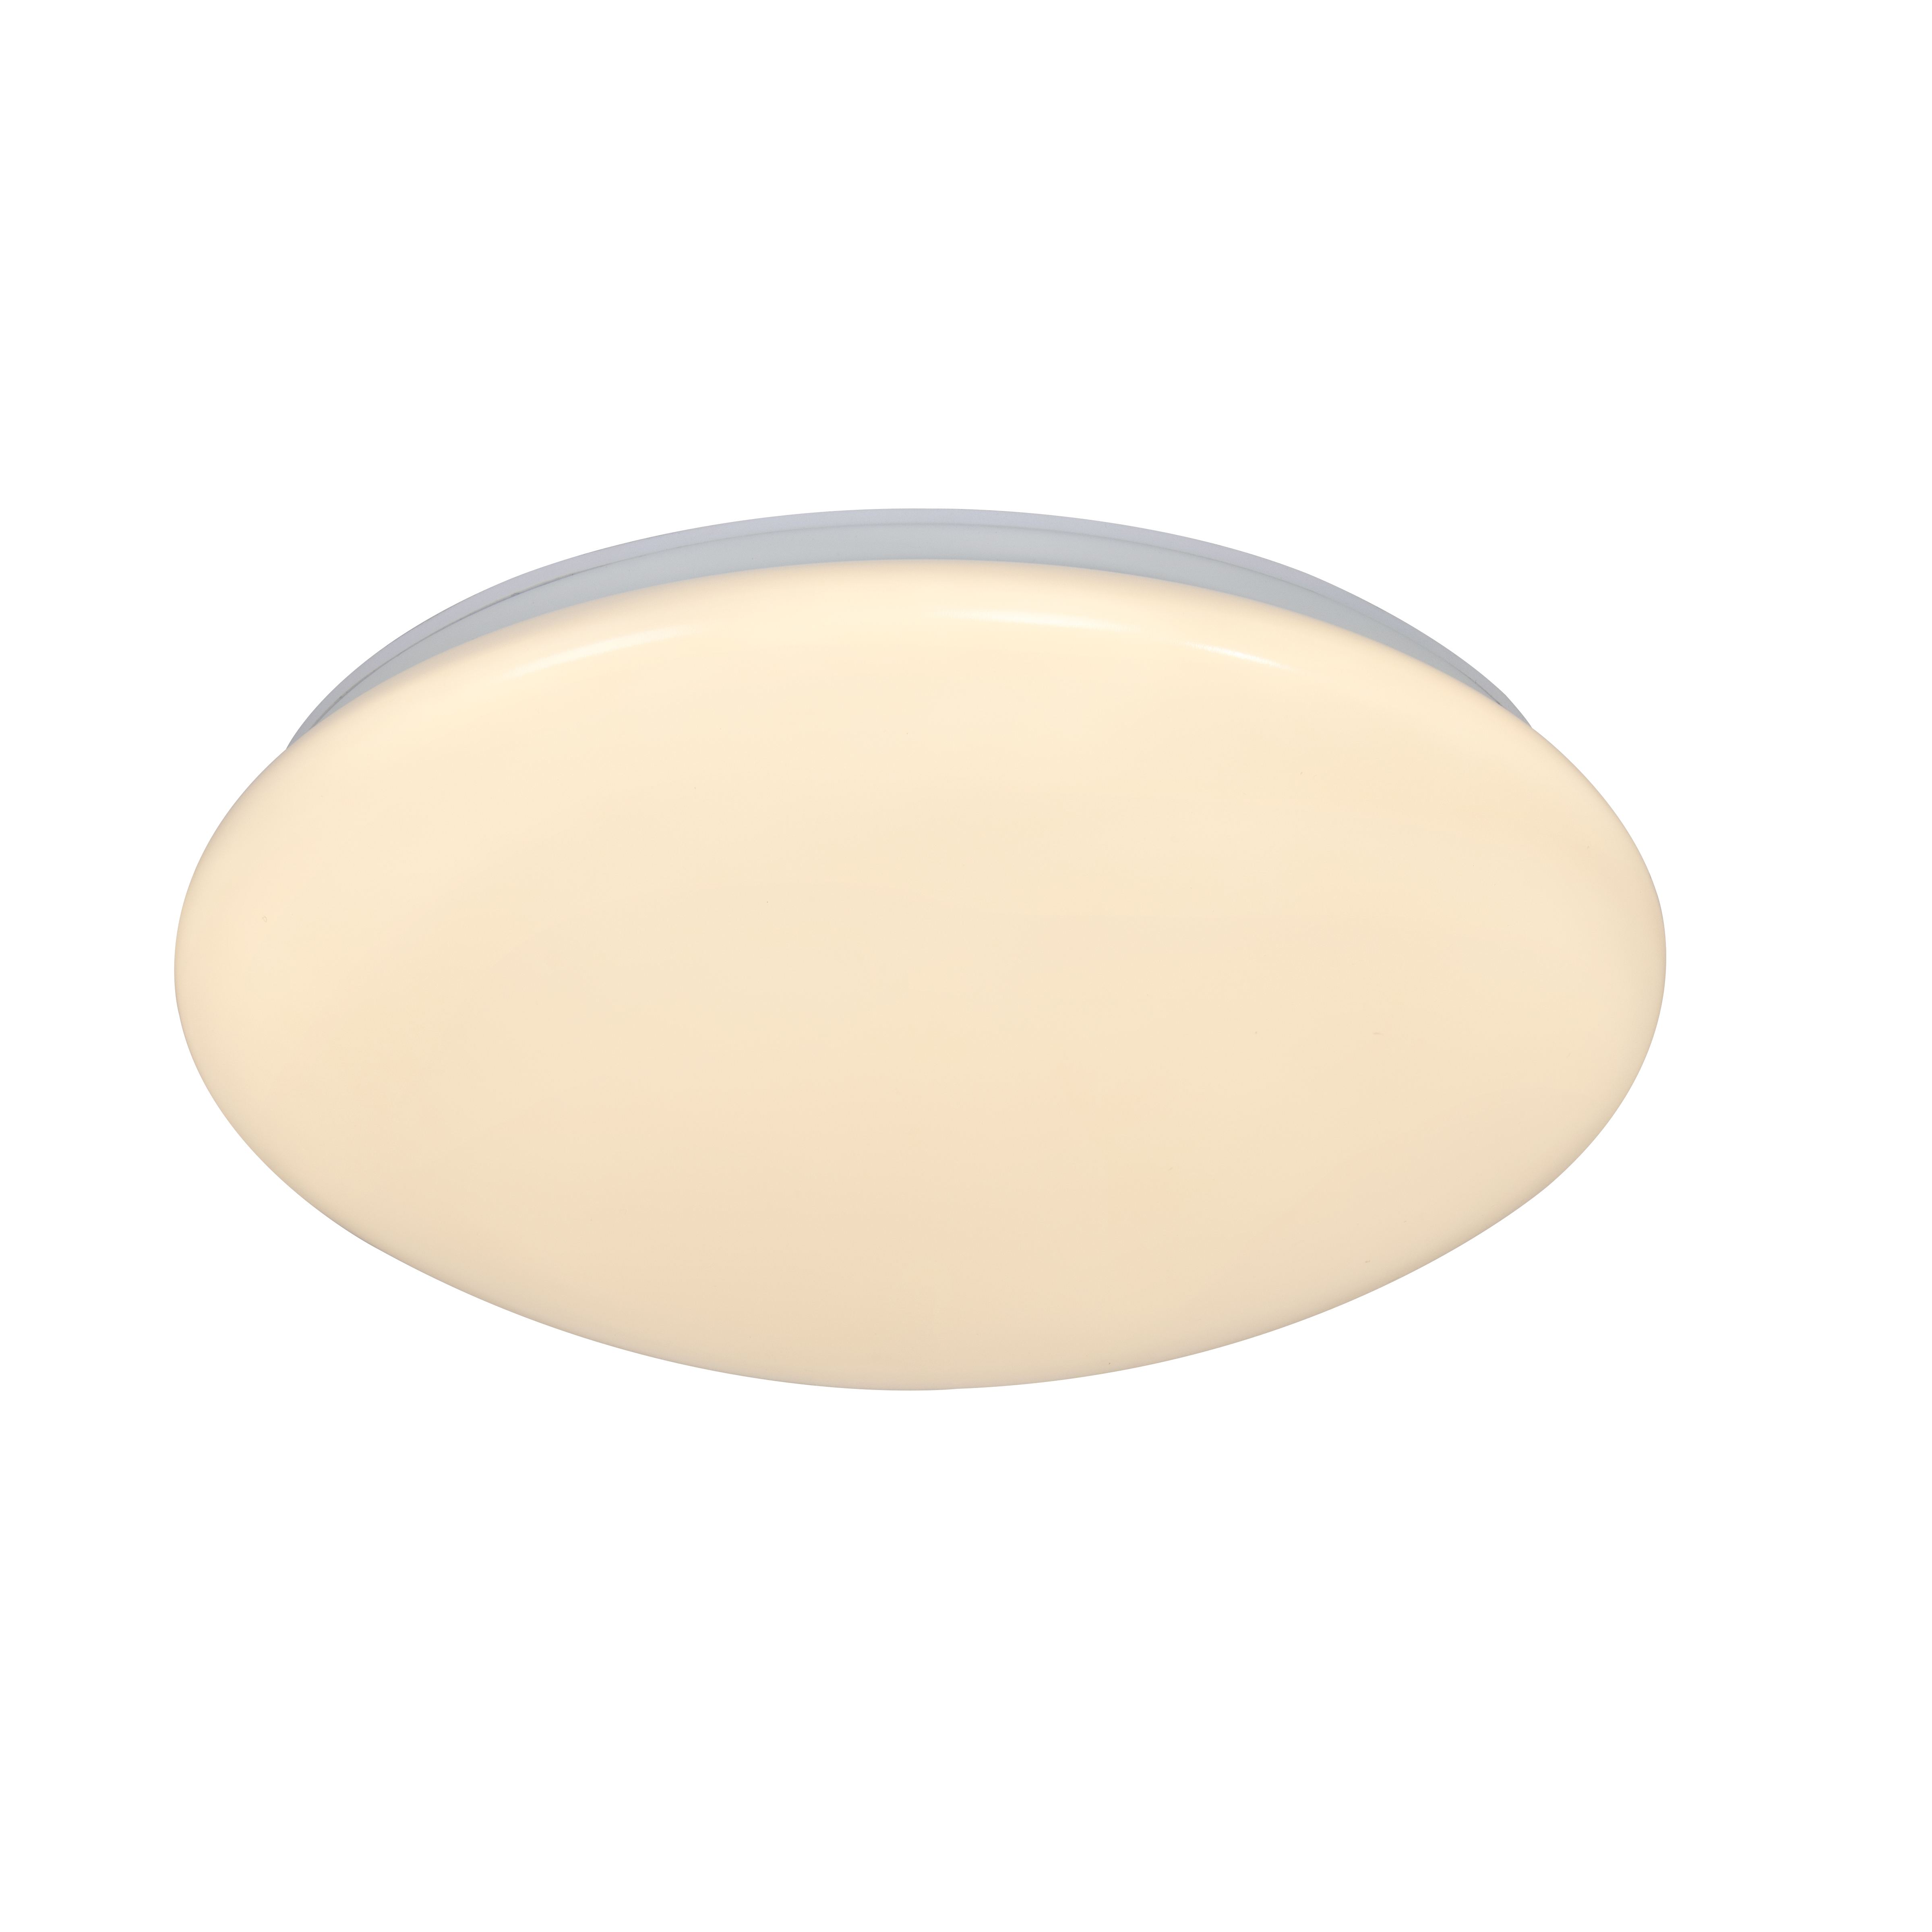 Montone light | | White 36 Ceiling